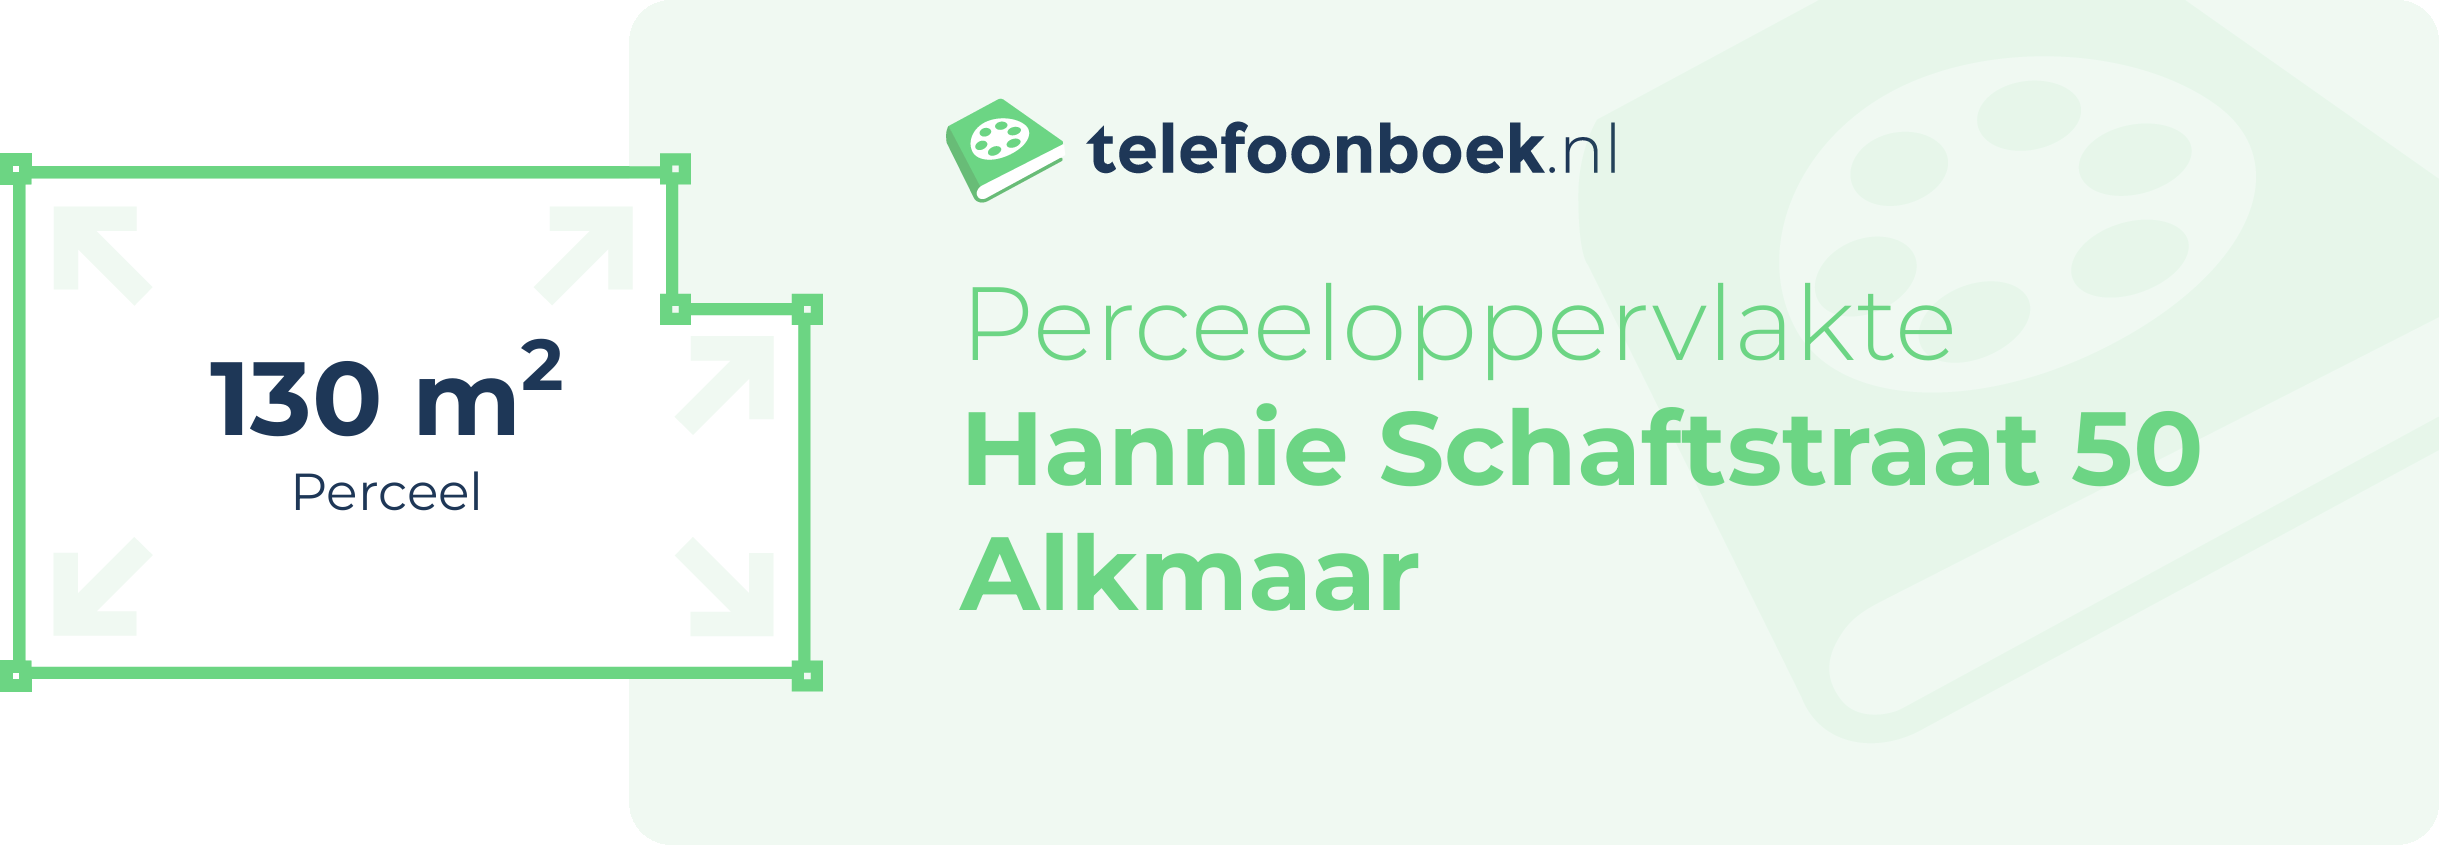 Perceeloppervlakte Hannie Schaftstraat 50 Alkmaar